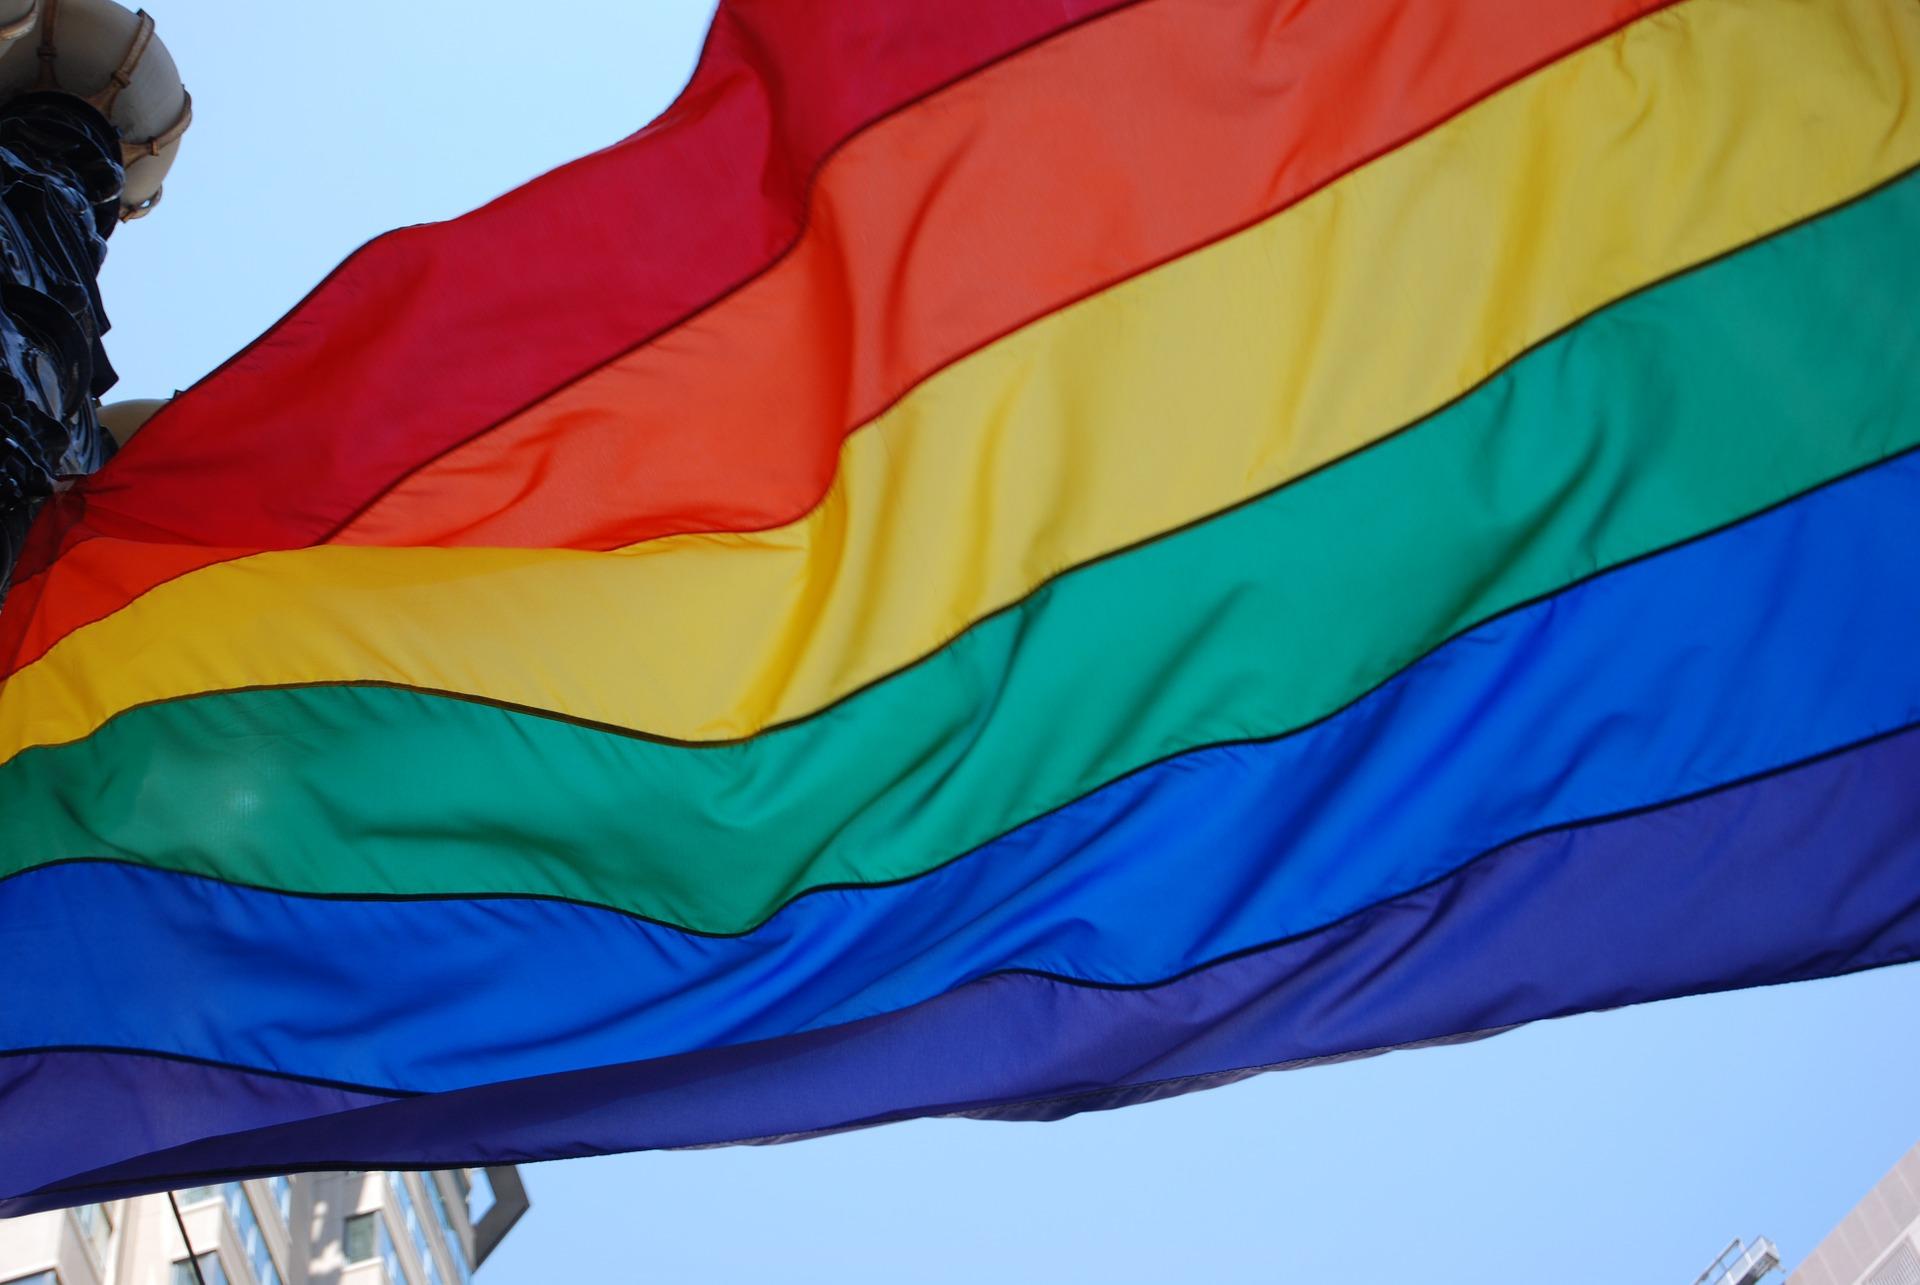 Bandera Lgtbi Contra Agressions Homofobes